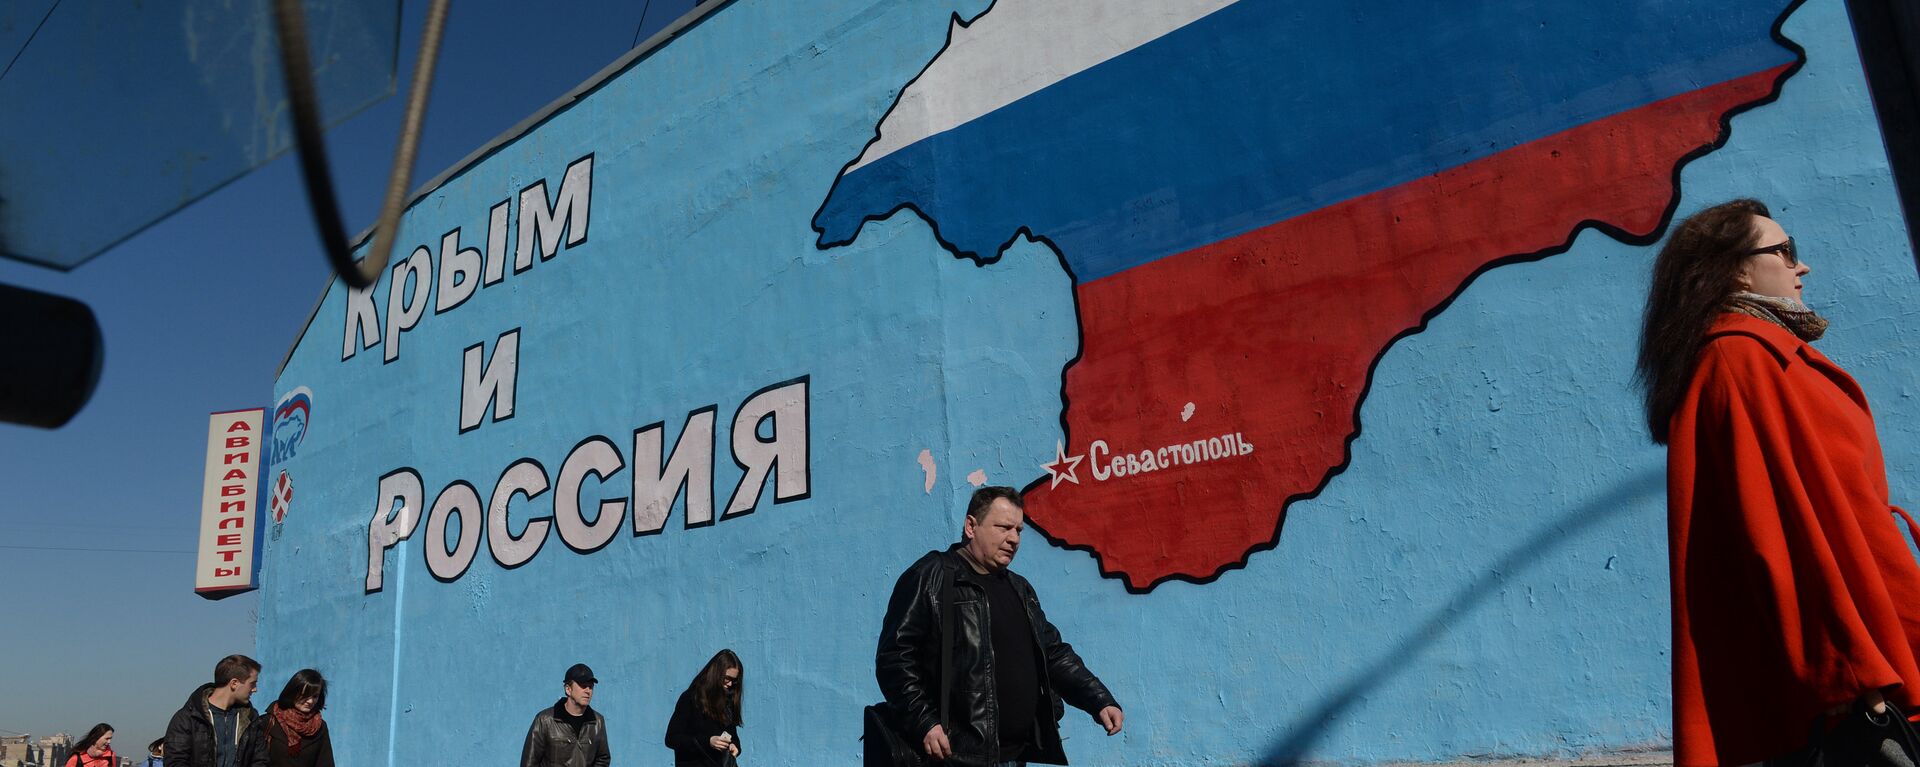 Графит Русија и Крим - заувек заједно  - Sputnik Србија, 1920, 03.03.2021